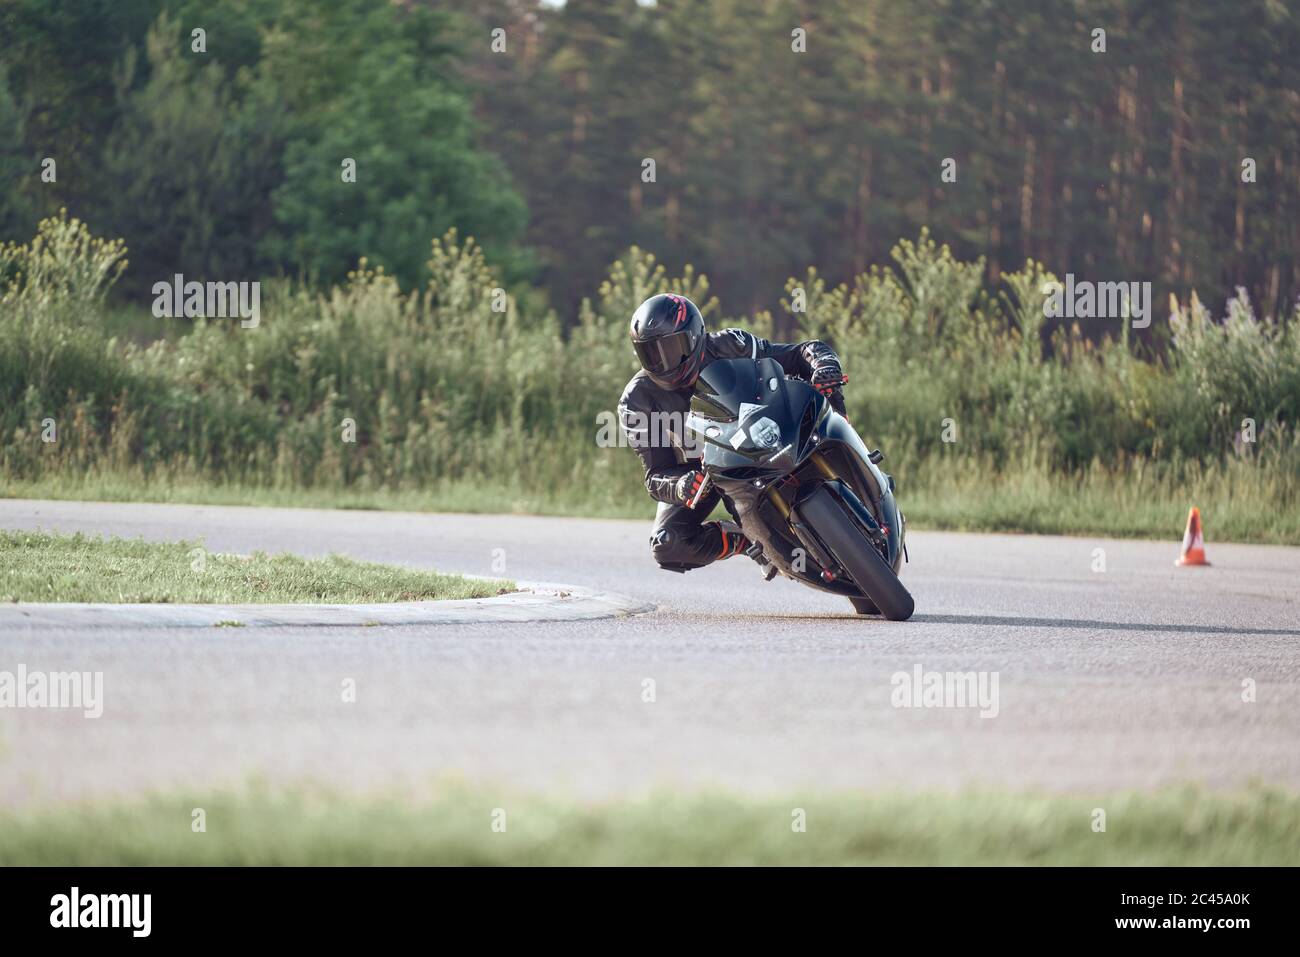 11-05-2020 Riga, Lettland. Motorbiker auf einer Rennstrecke, die um eine Ecke mit einem Rennkurs Bordstein hinter sich rast. Stockfoto